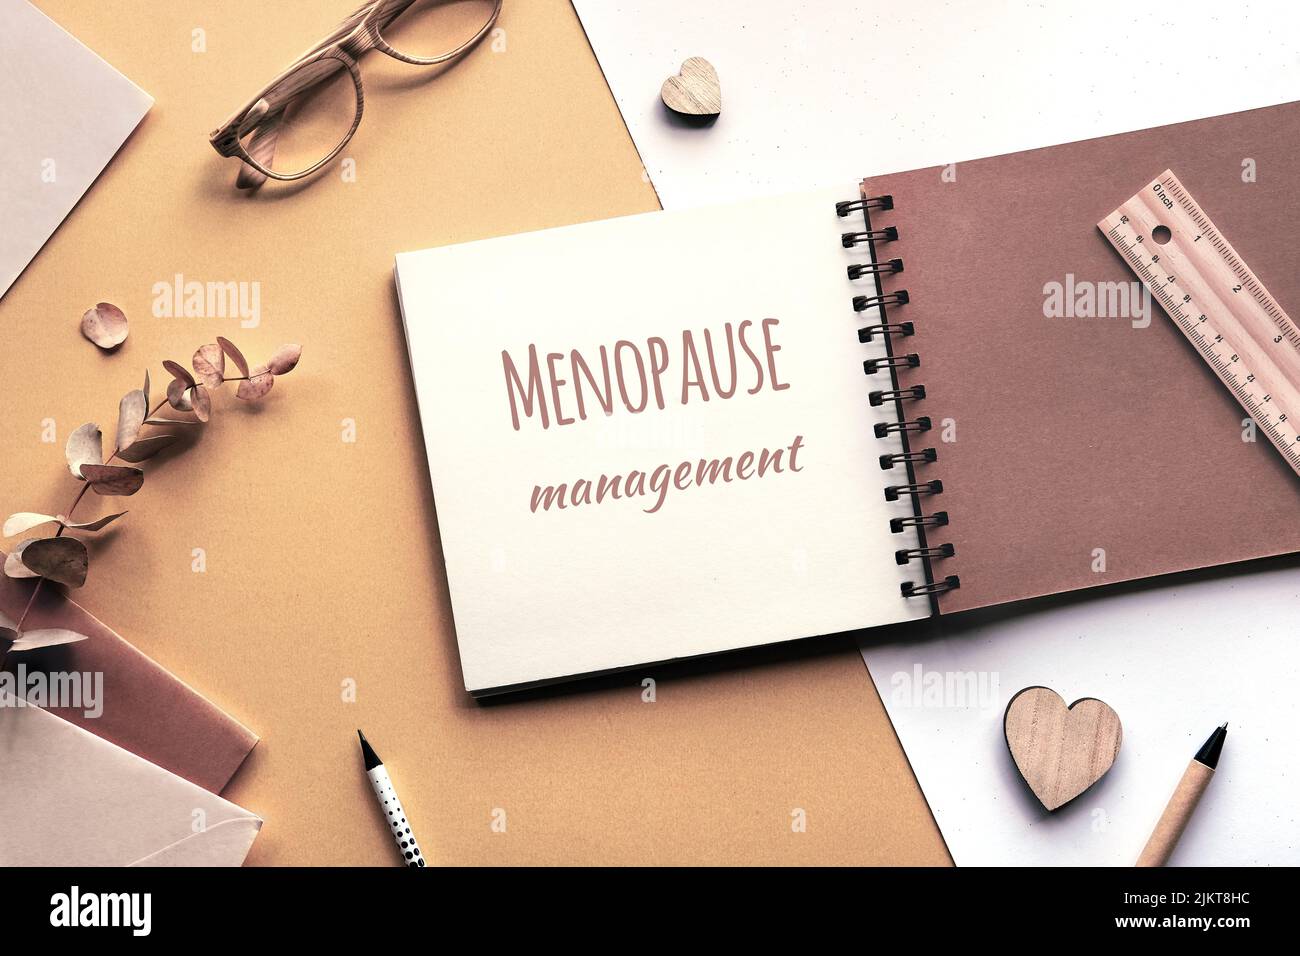 Leyenda texto motivador Menopause gestión en álbum cuadrado, cuaderno con carpeta en espiral. Tonos beige monocromáticos. Foto de stock